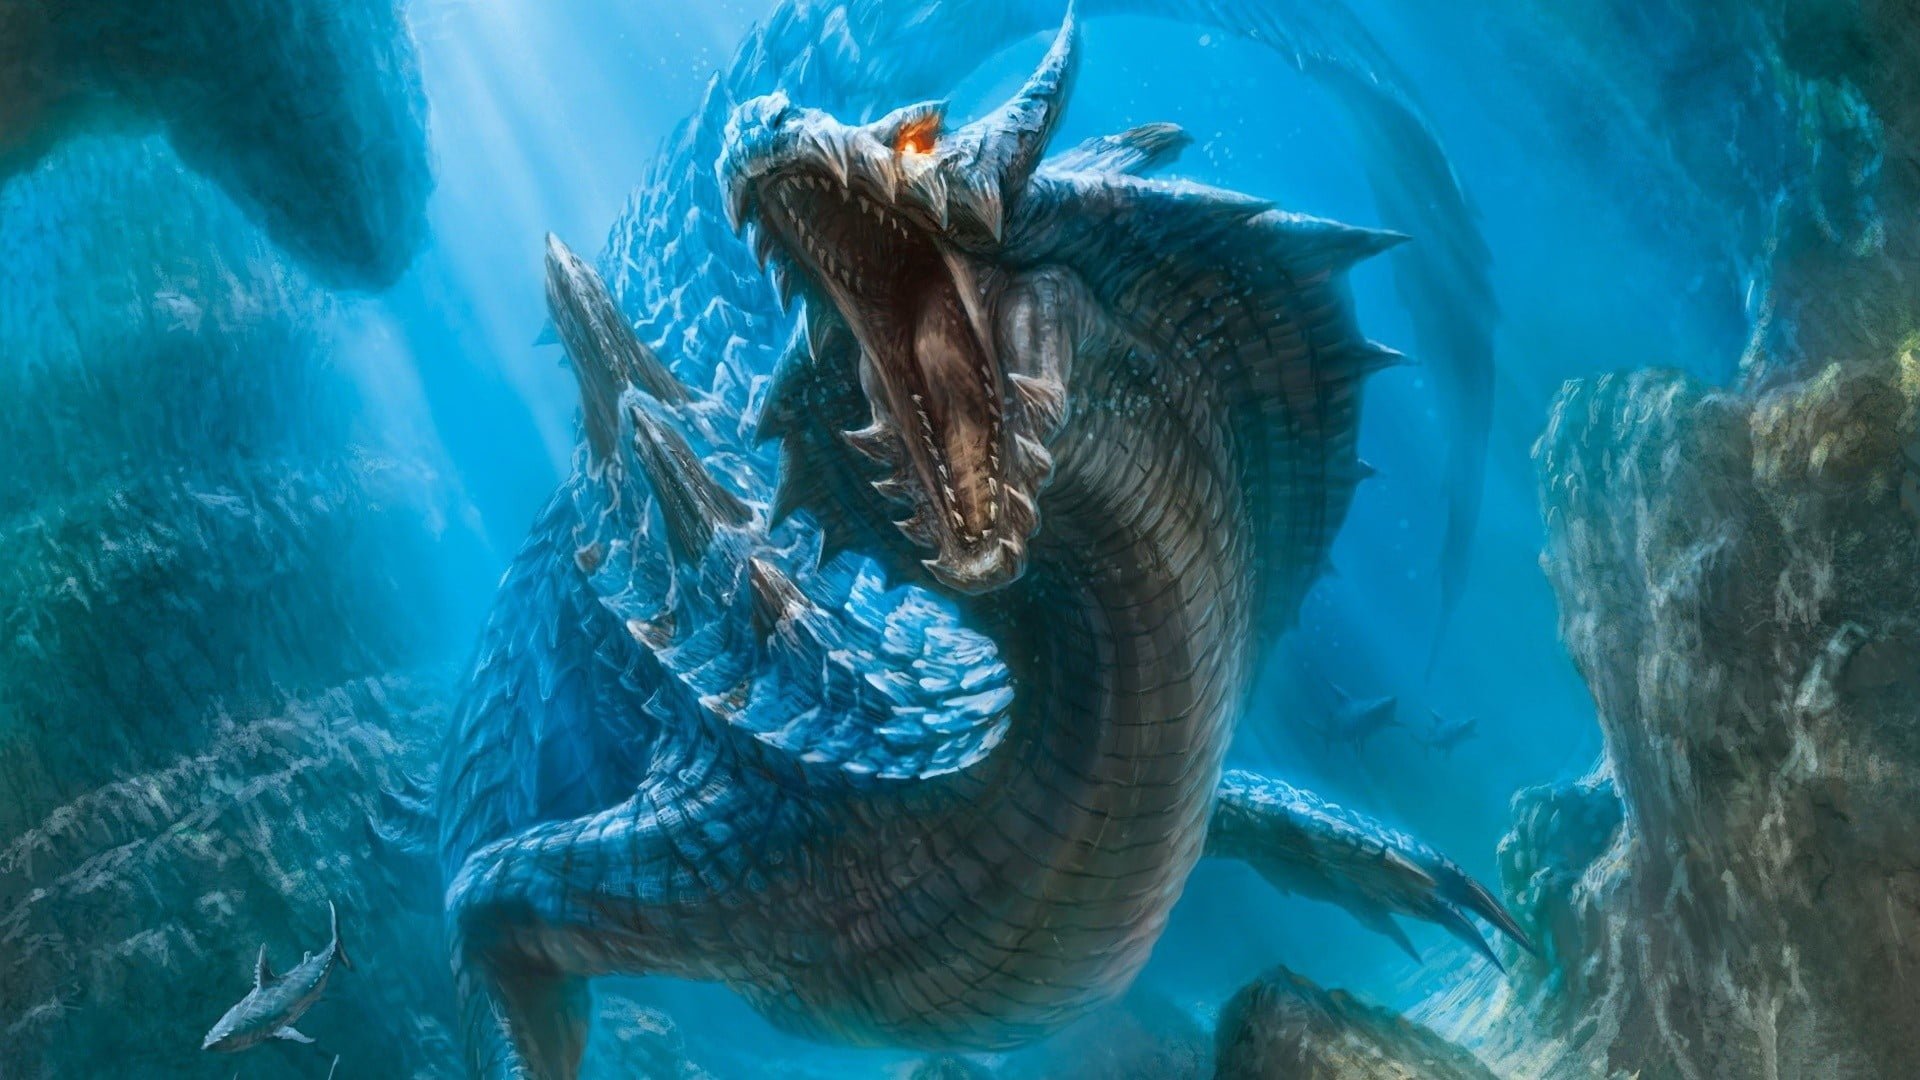 Blue Dragon Cool Desktop Wallpaper 